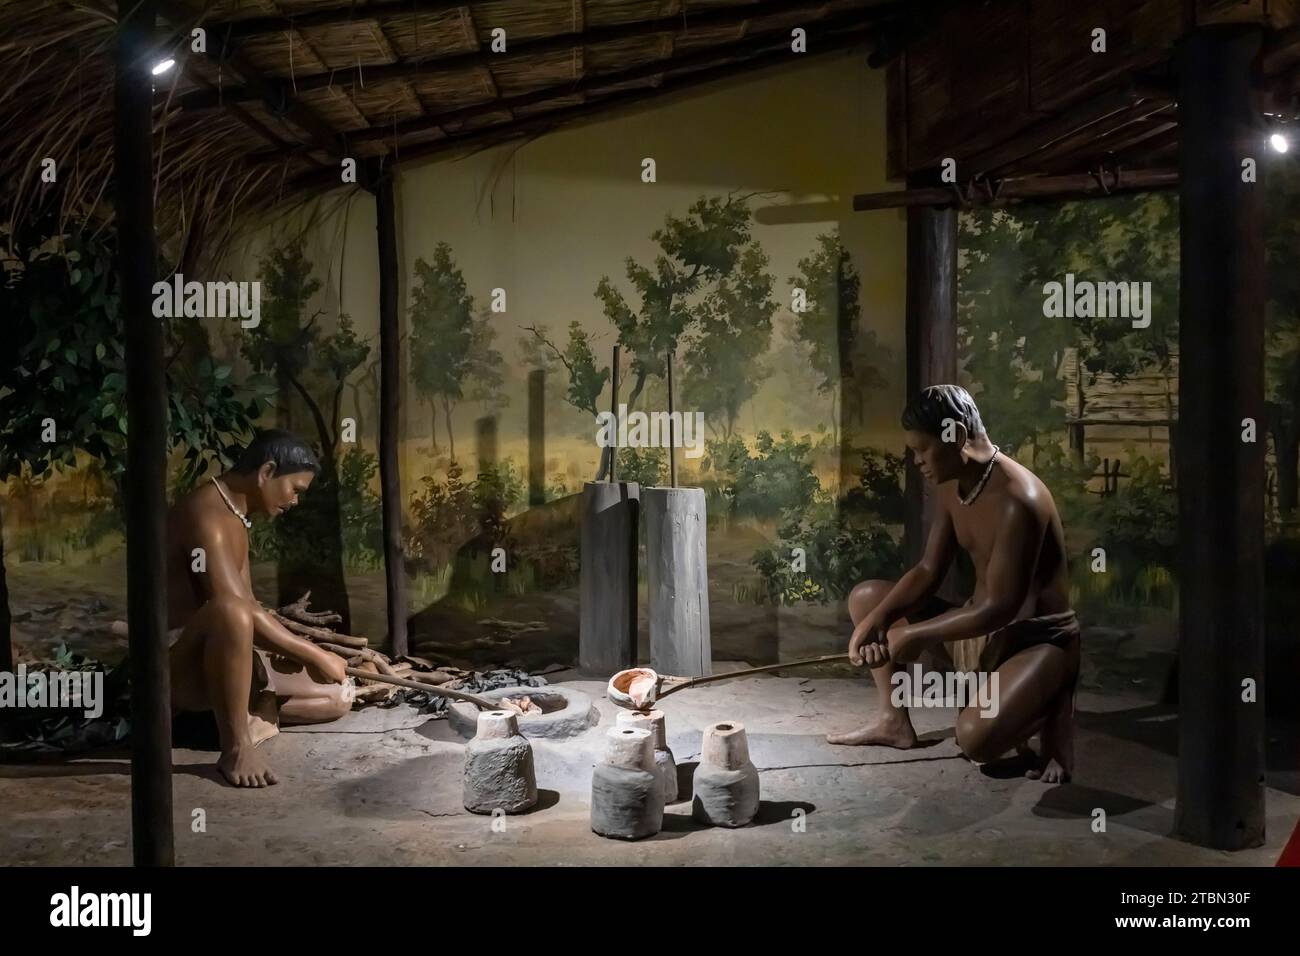 Ban Chiang Musée national, diorama de la vie humaine ancienne, métallurgie, Ban Chiang, Udon Thani, Thaïlande, Asie du Sud-est, Asie Banque D'Images